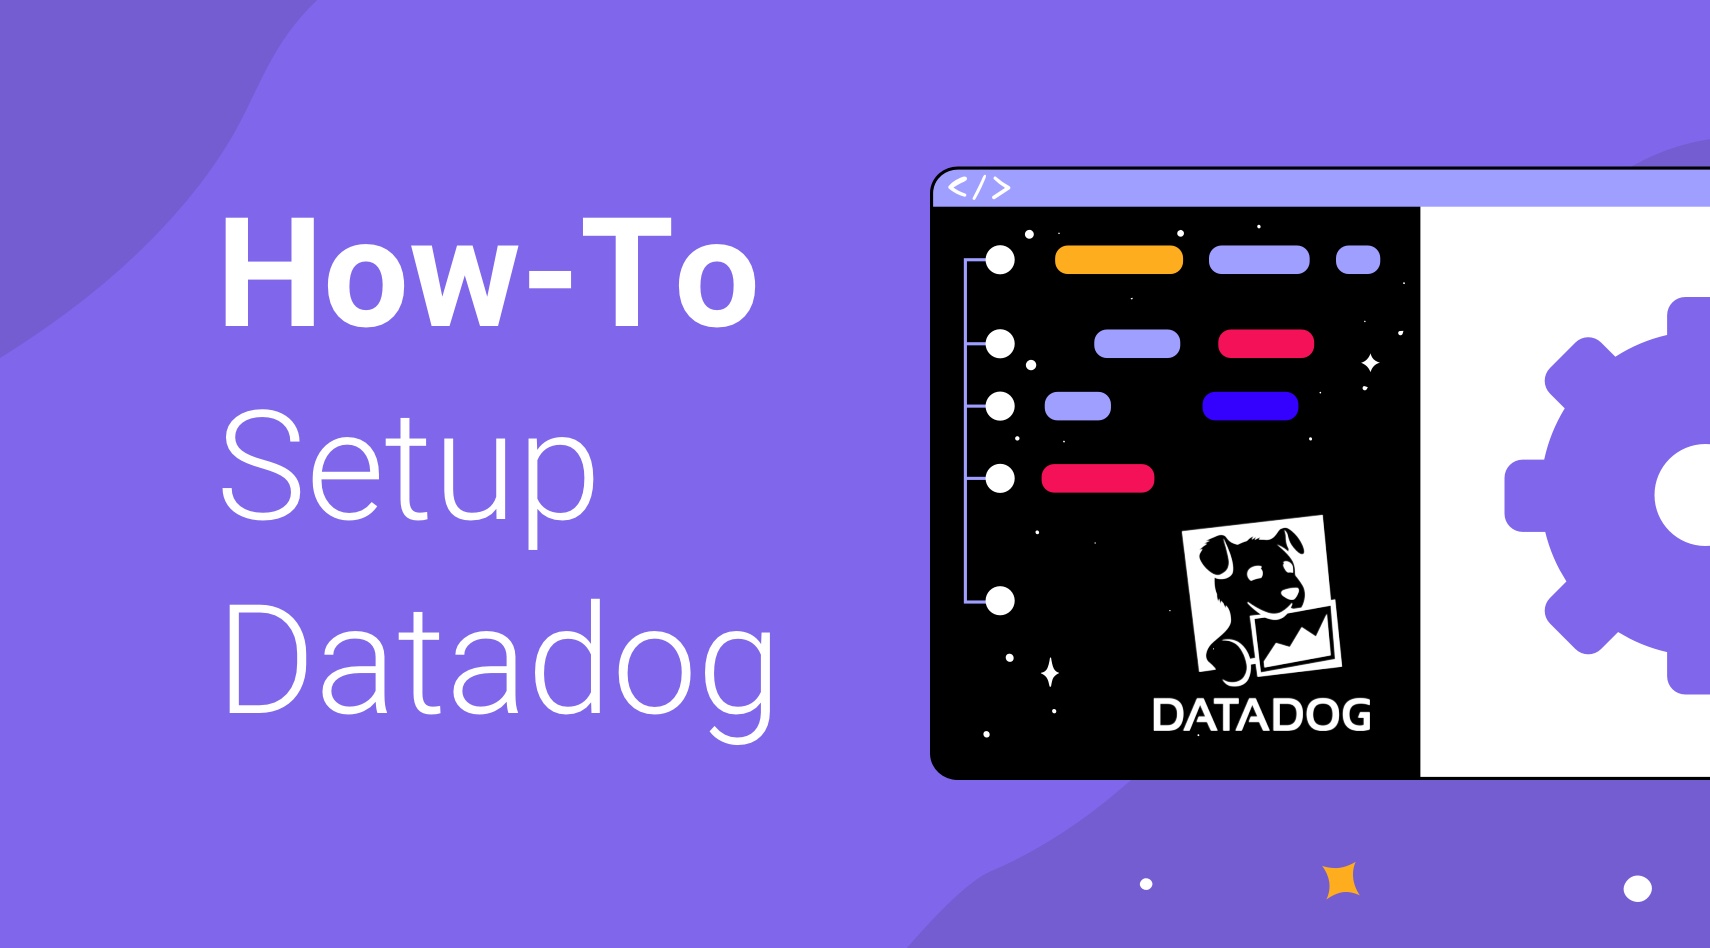 How-to Setup Datadog